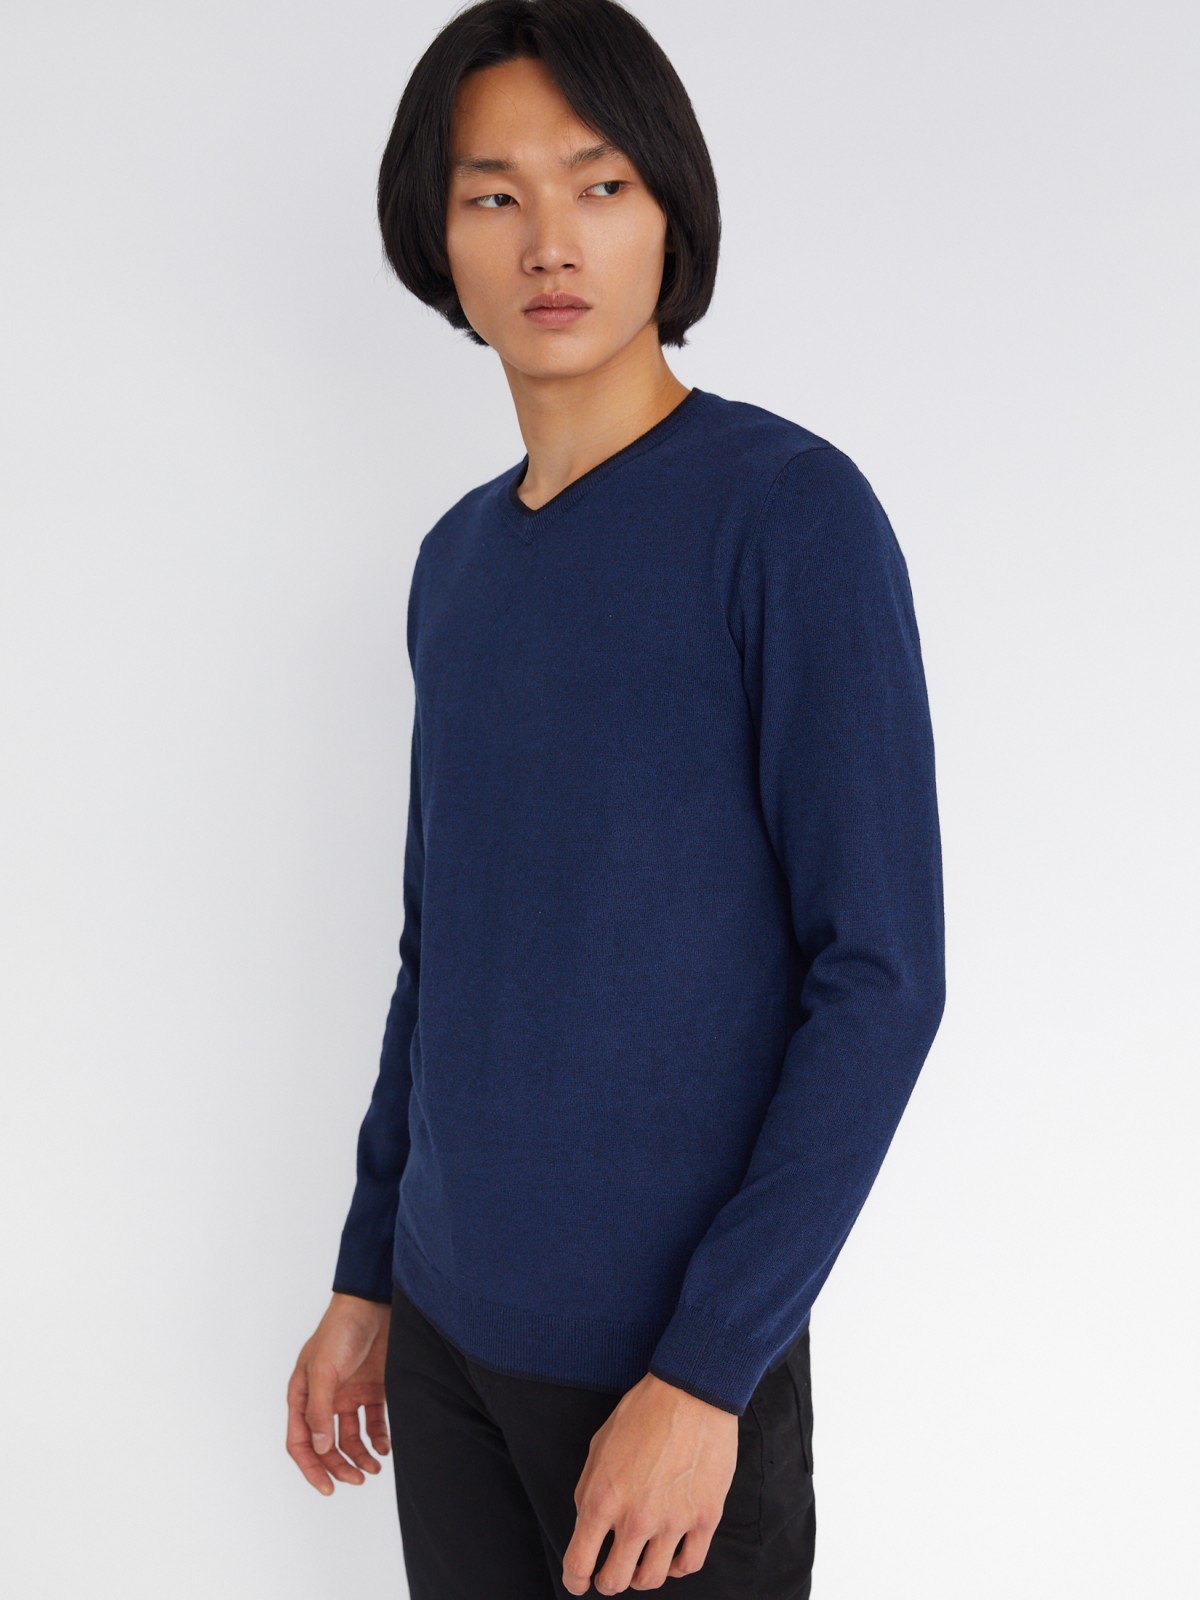 Тонкий трикотажный пуловер с треугольным вырезом и длинным рукавом zolla 213336165022, цвет синий, размер M - фото 4